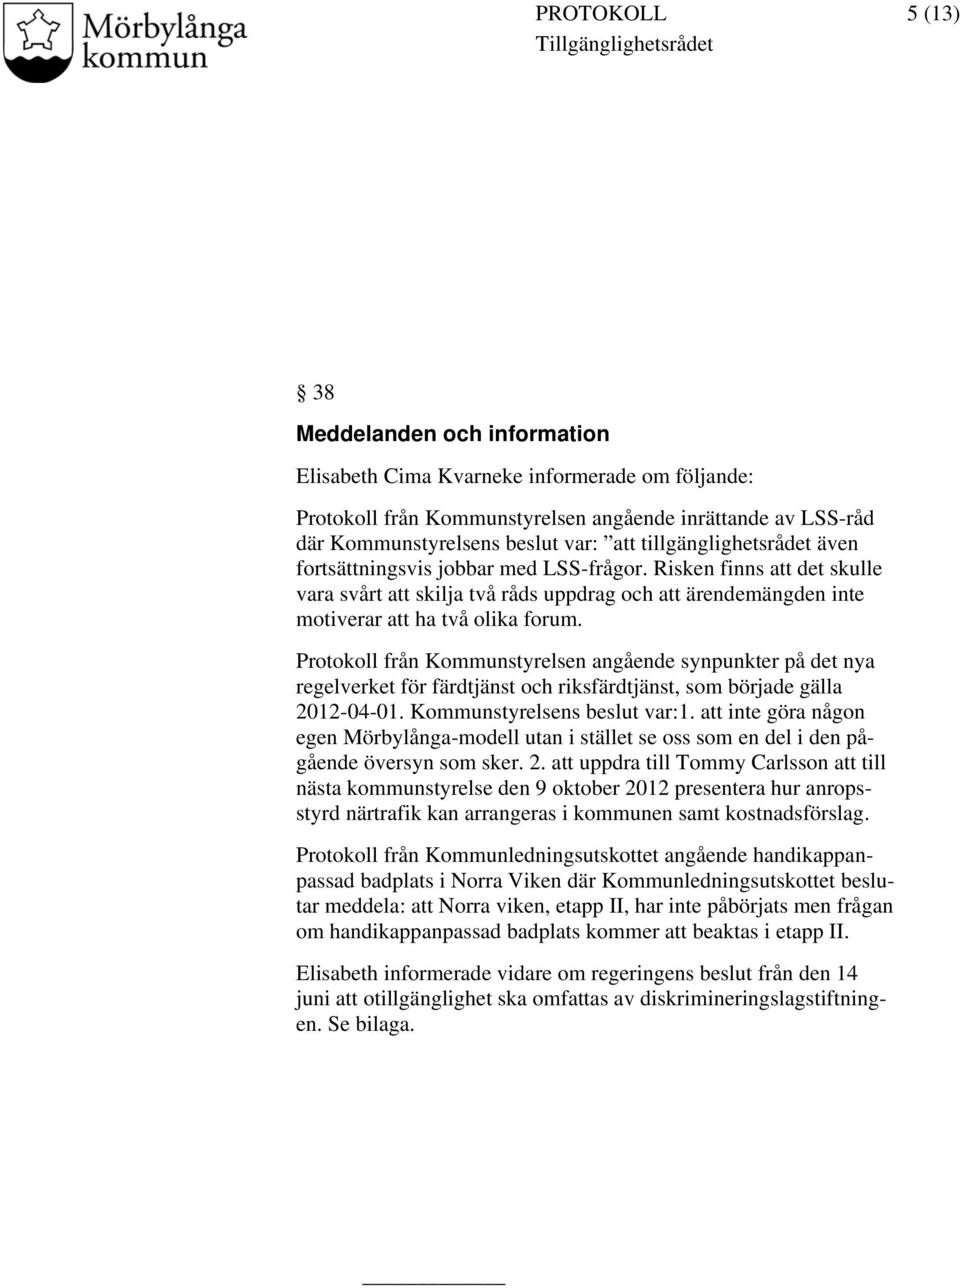 Protokoll från Kommunstyrelsen angående synpunkter på det nya regelverket för färdtjänst och riksfärdtjänst, som började gälla 2012-04-01. Kommunstyrelsens beslut var:1.